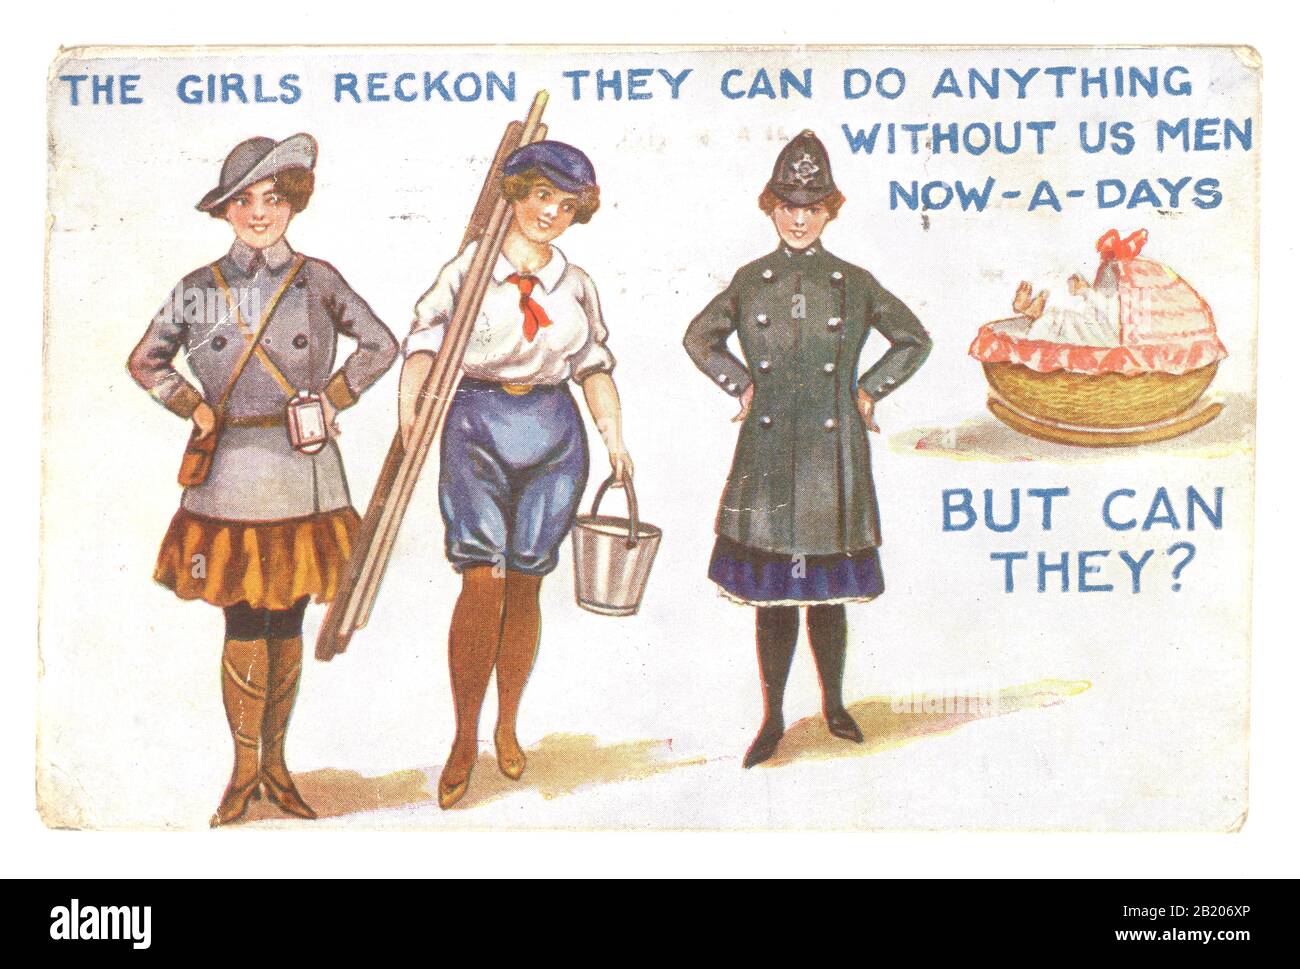 Tarjeta postal de principios de 1900 de la era WW1 del cómic británico publicada el 31 de julio de 1918. La tarjeta postal dice "Las niñas consideran que pueden hacer algo sin nosotros los hombres ahora-a-días - Pero ¿pueden ellos?" las mujeres asumieron los papeles de los hombres durante la "Gran Guerra" aquí fueron empleadas como conductores de autobús, limpiadoras de ventanas y en la policía. REINO UNIDO Foto de stock